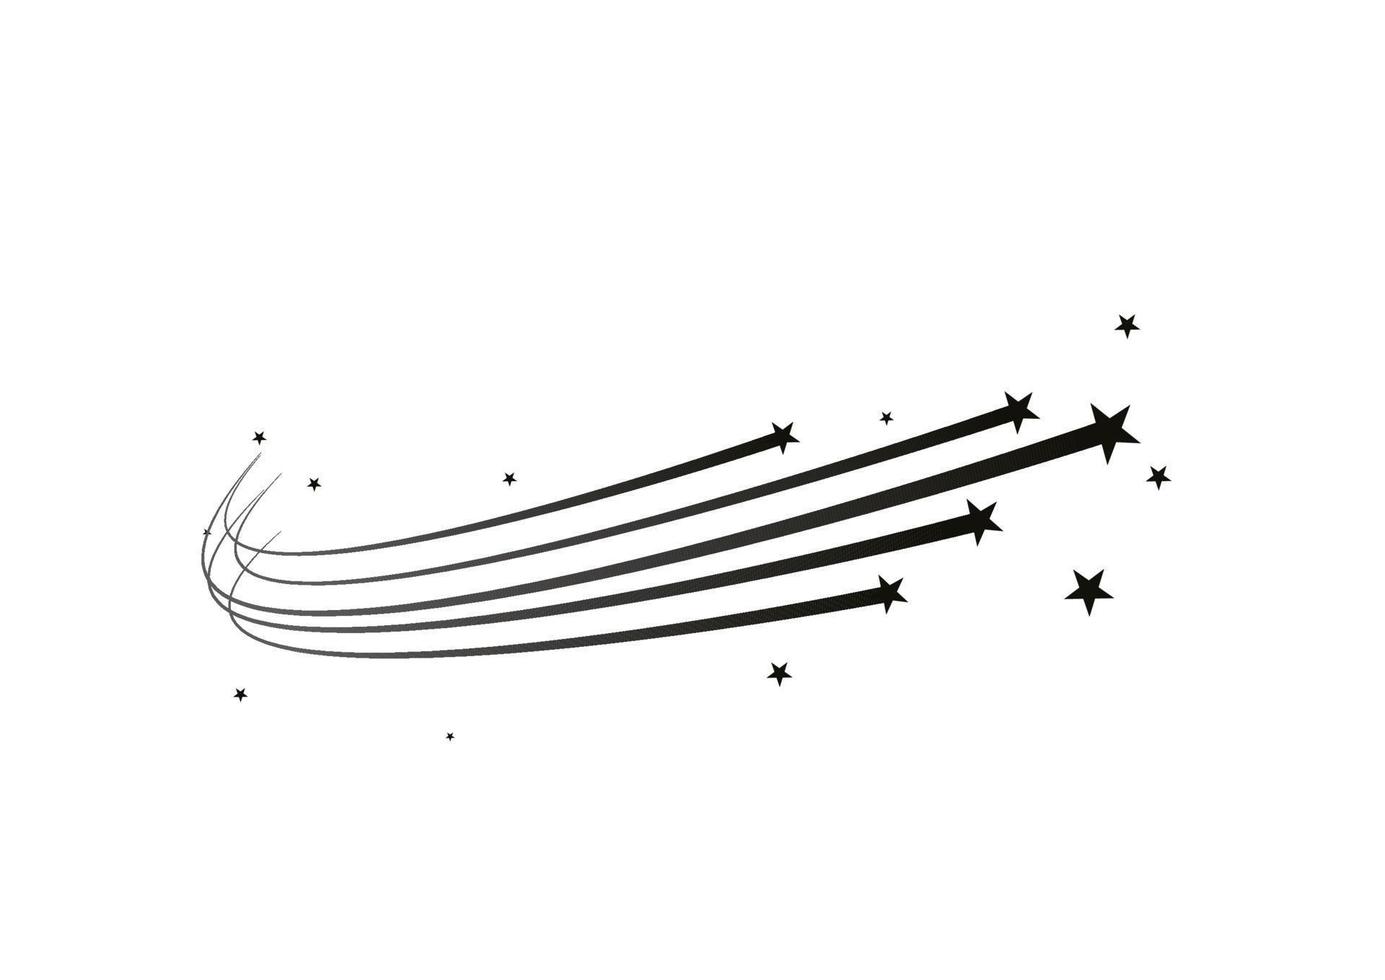 estrela cadente abstrata, estrela cadente com uma poderosa estrela de trilha em um meteoróide de fundo branco, cometa, linha de velocidade, vórtice de movimento, asteróide, linha de movimento de velocidade. vetor